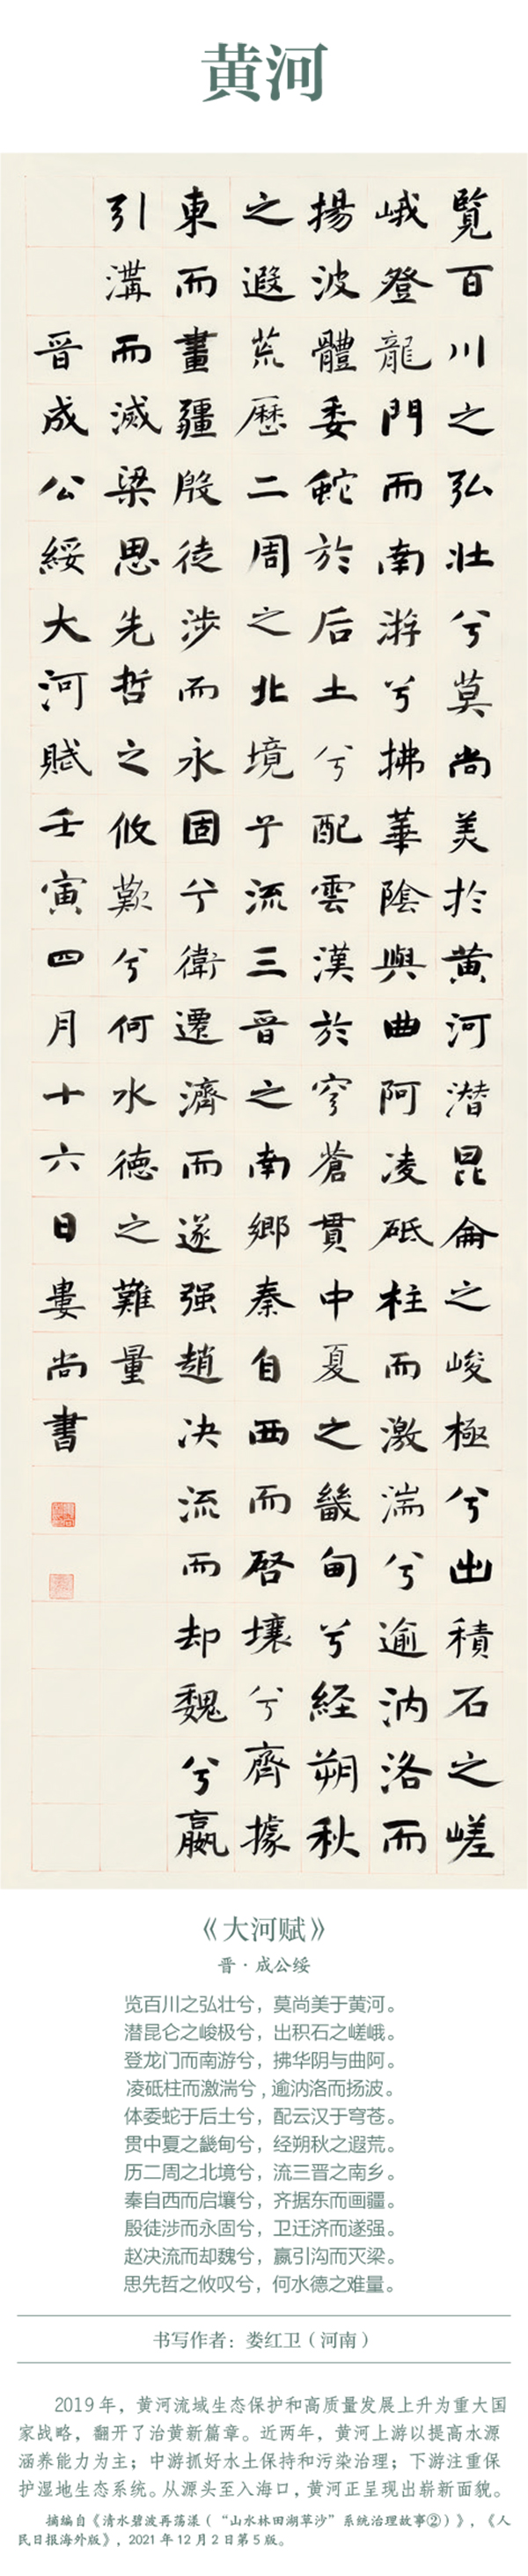 中國書協主題創作書法系列展——美麗中國插圖8題字網